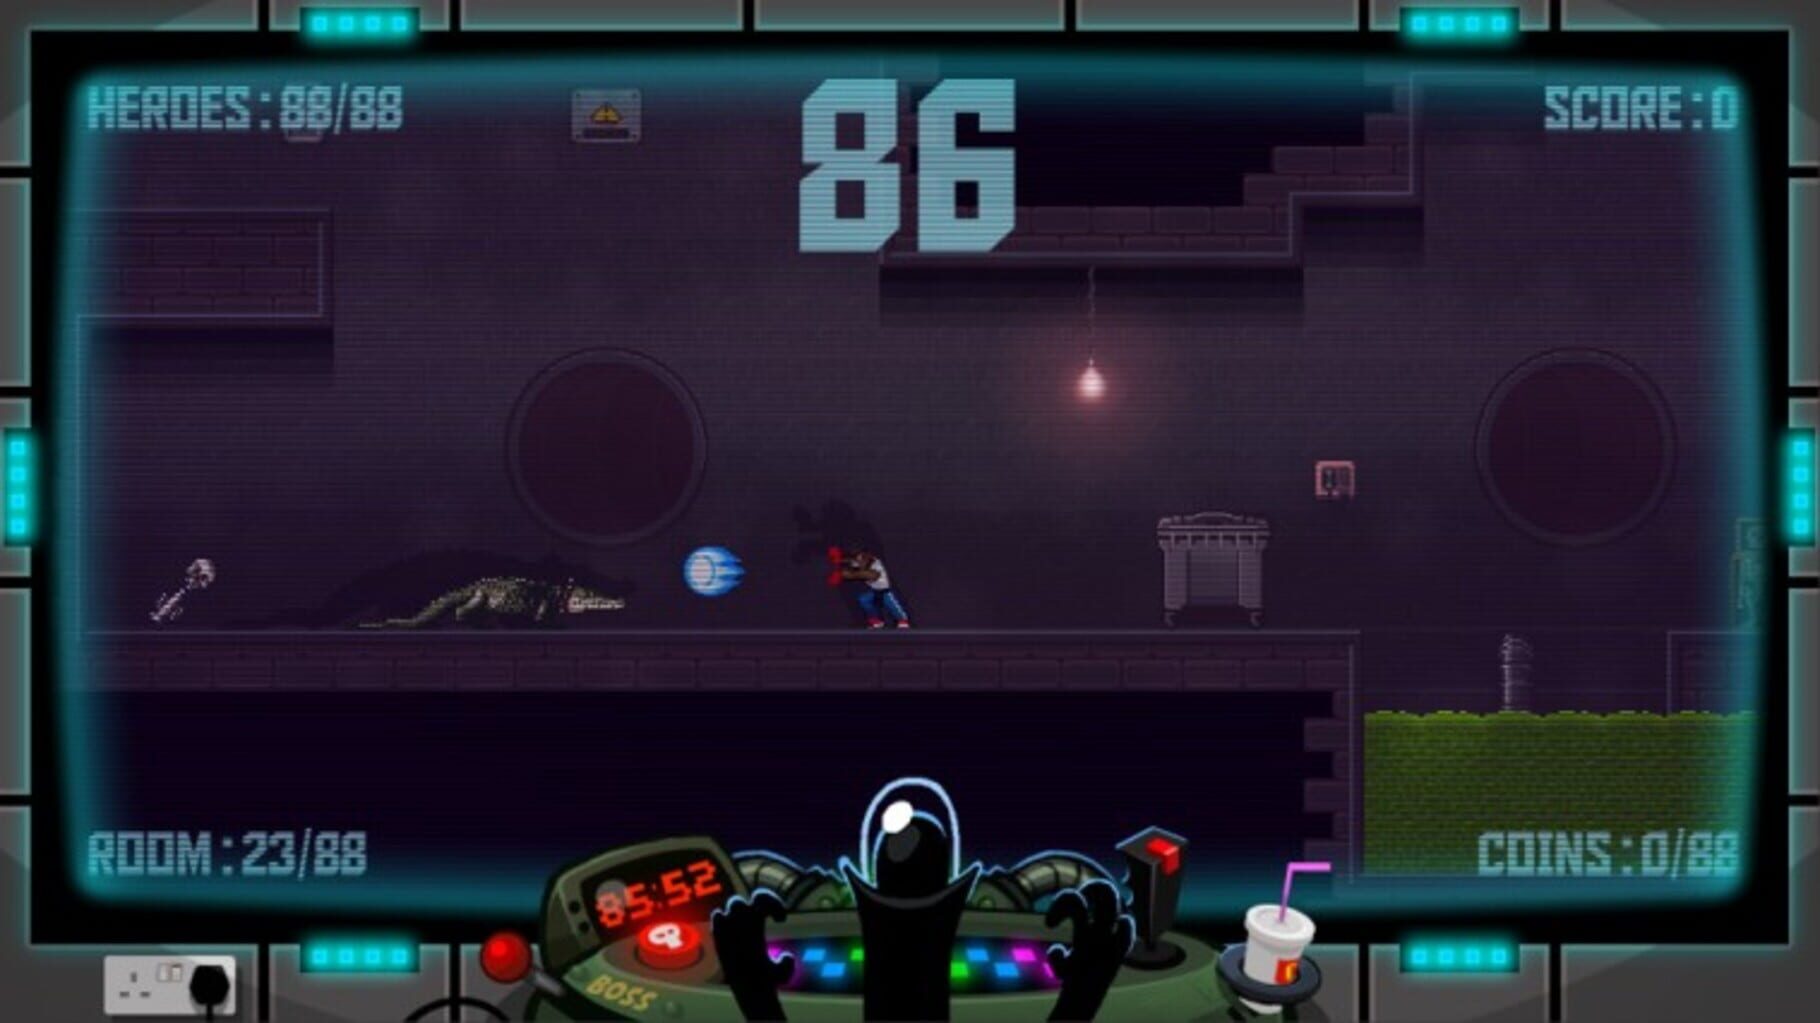 88 Heroes: 98 Heroes Edition screenshot